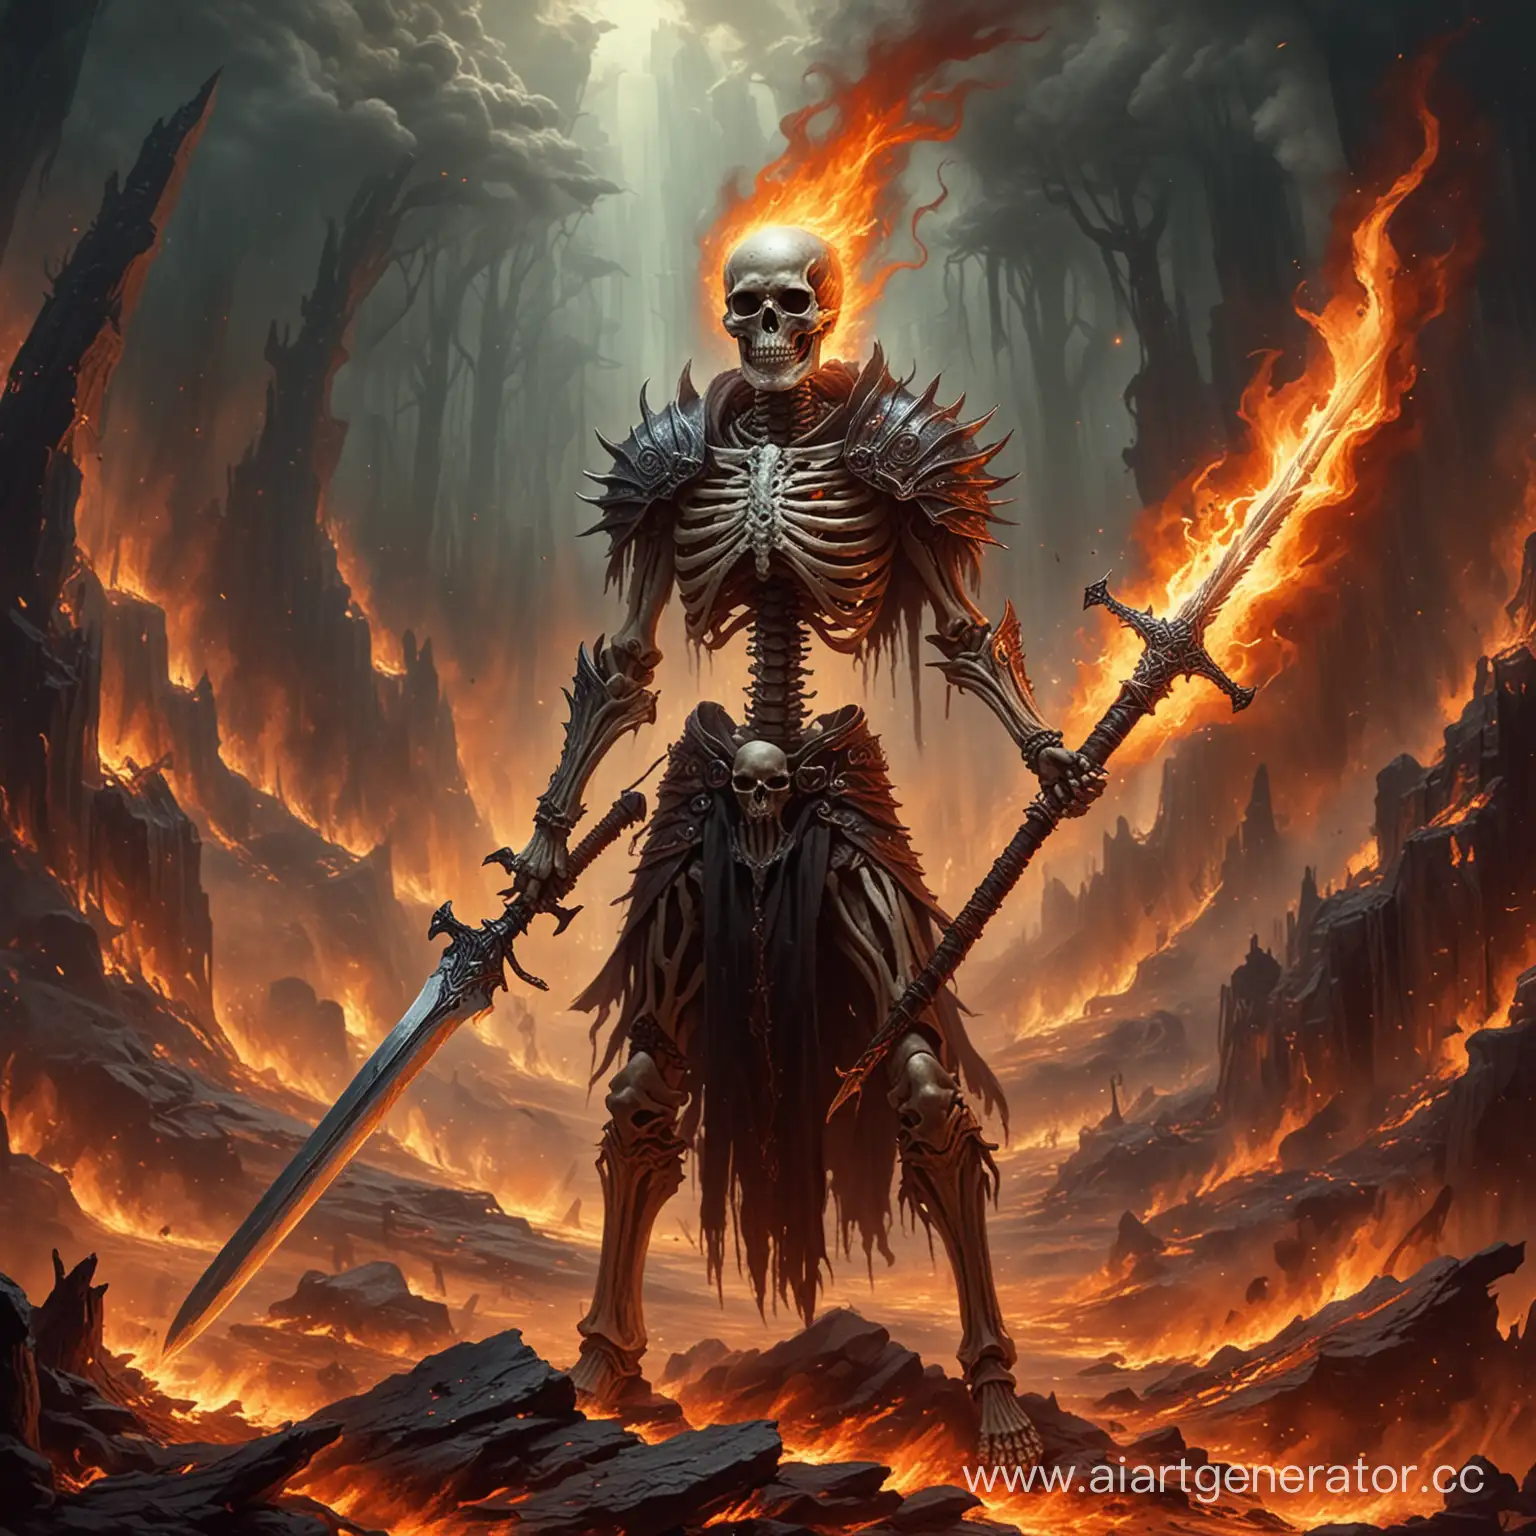 Fiery-Skeleton-Warrior-Wielding-Flaming-Sword-in-Hell